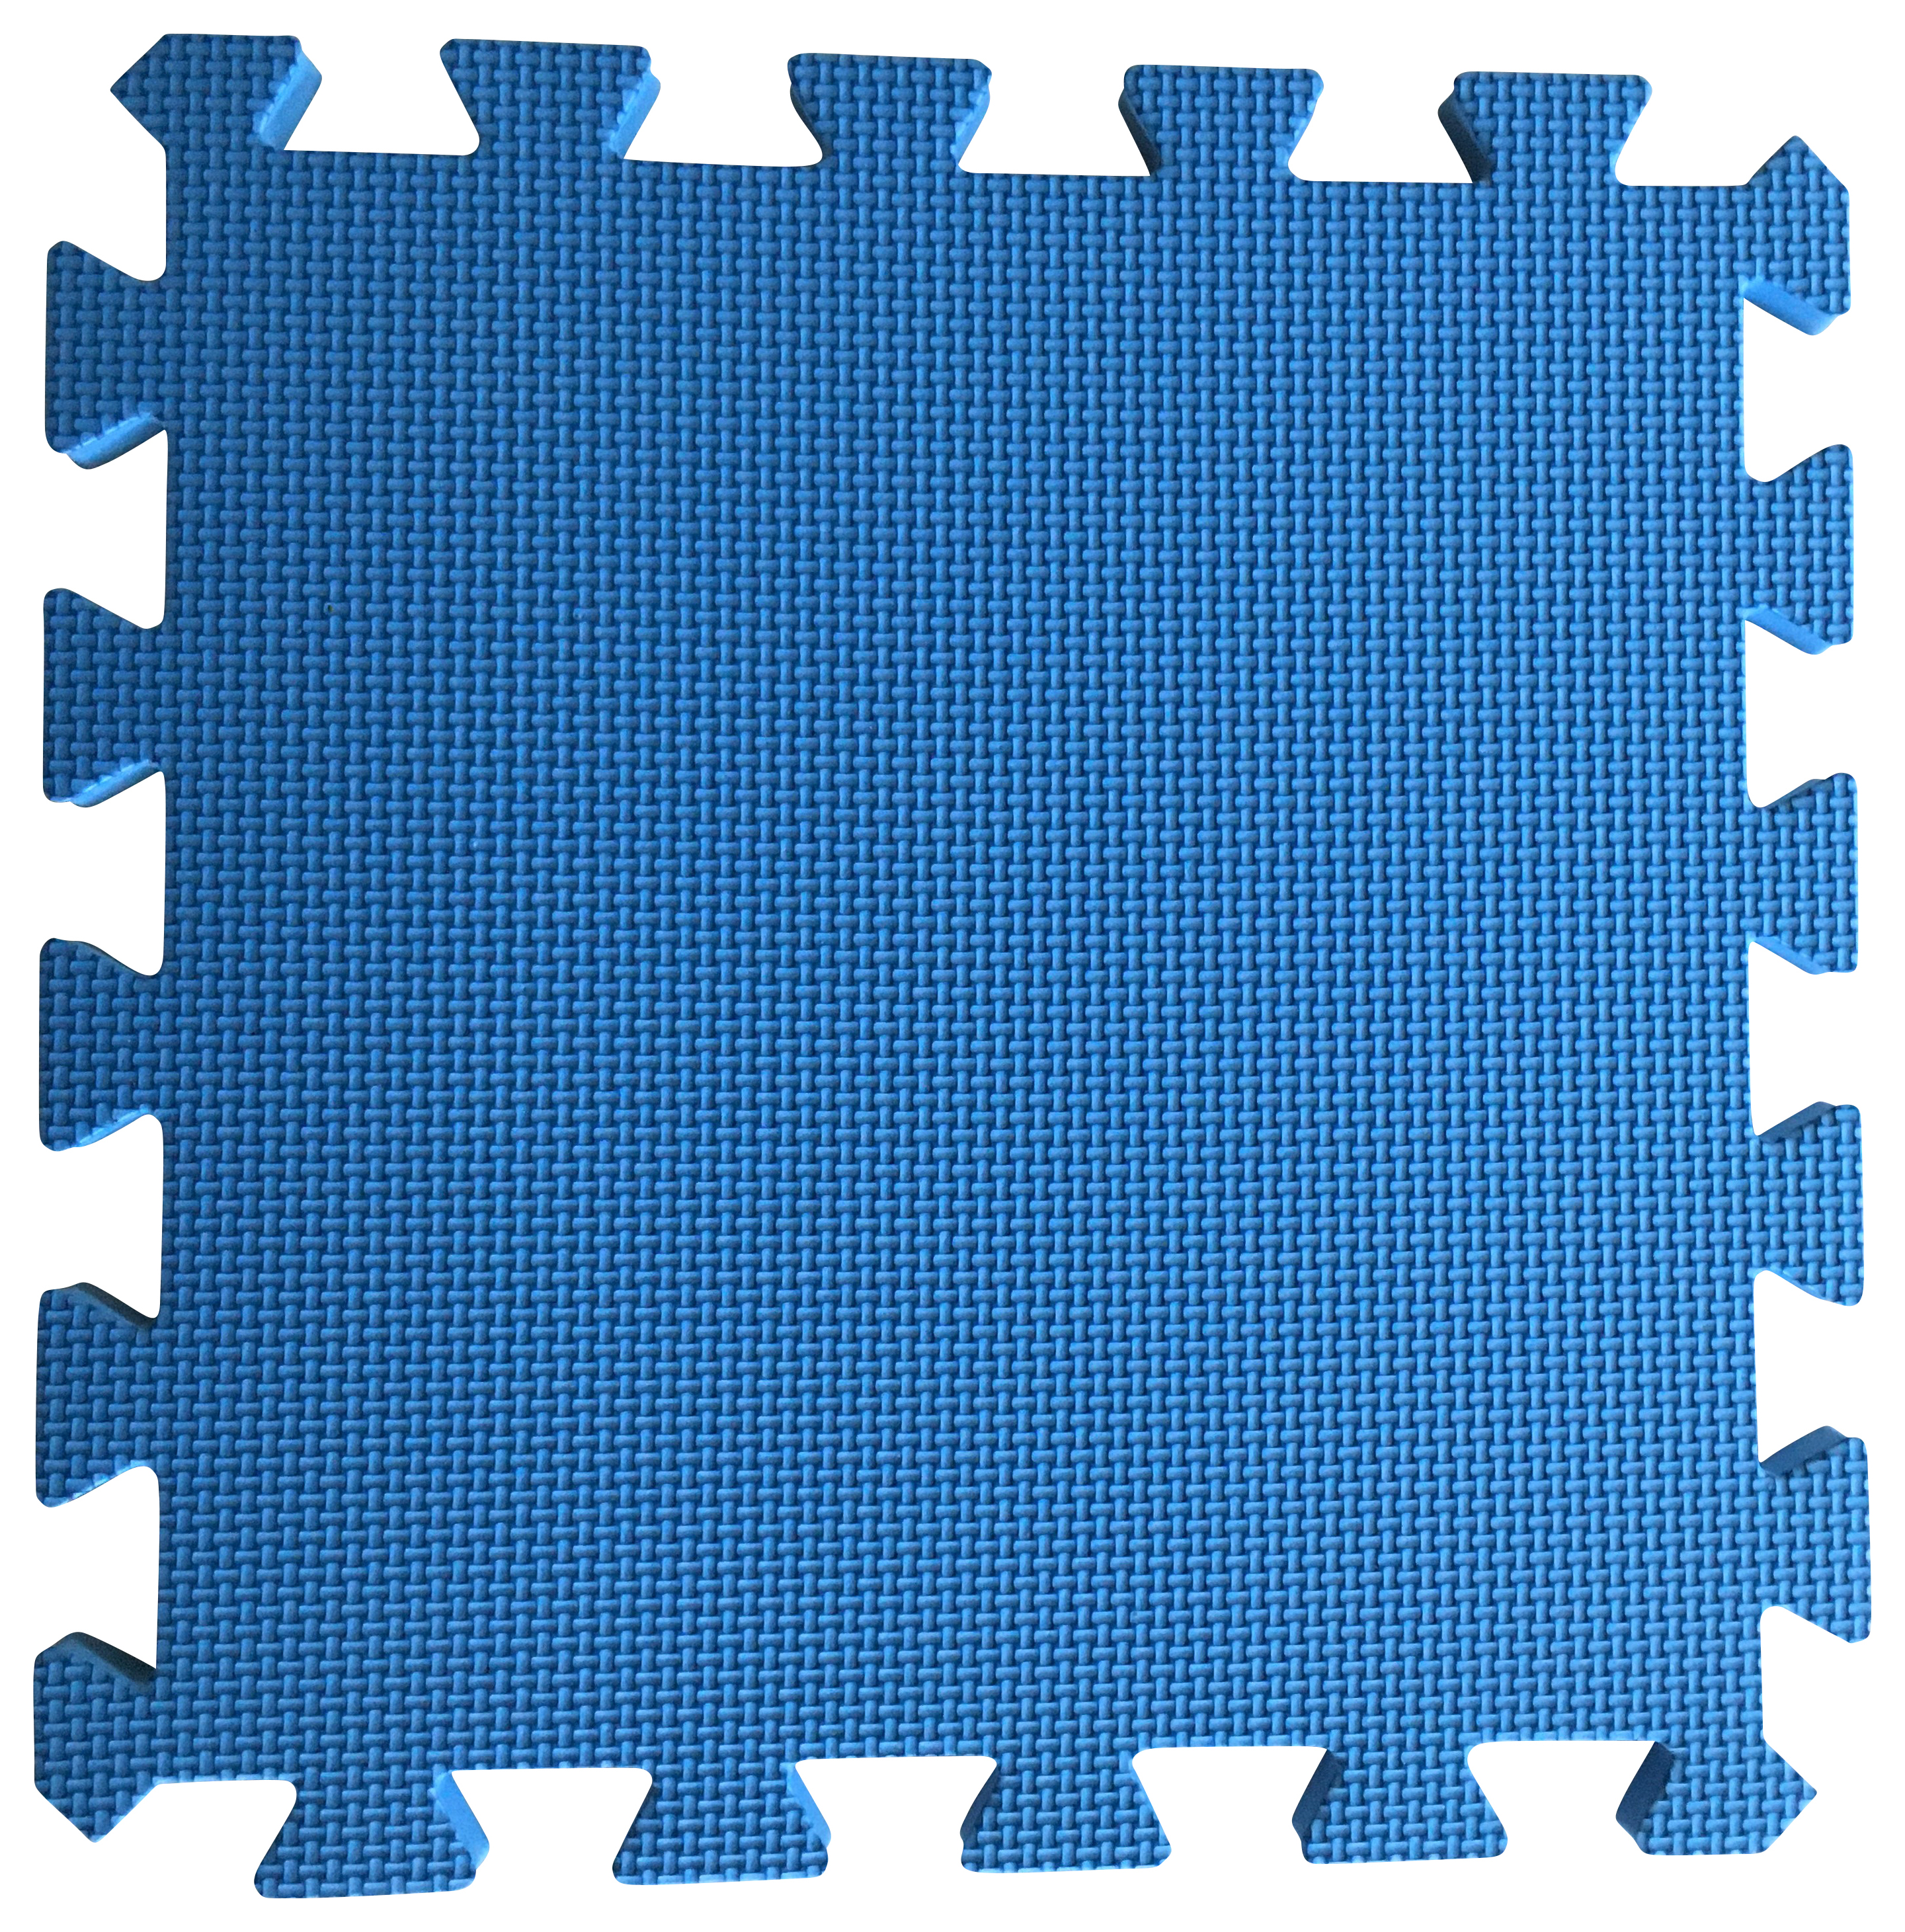 Warm Floor Blue Interlocking Floor Tiles for Garden Buildings - 9 x 10ft